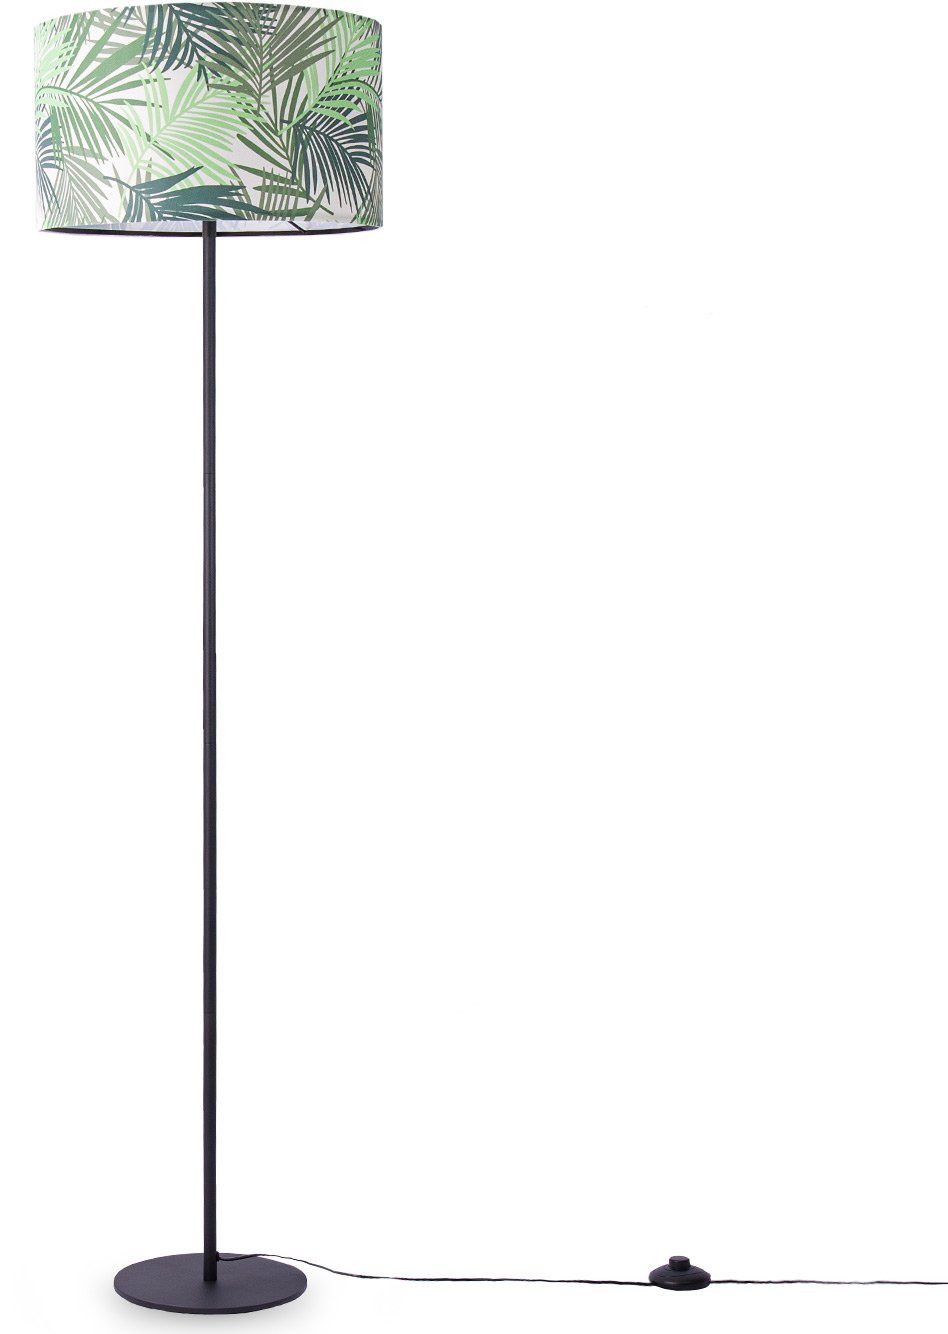 Stehlampe Palme Kinderzimmer Ostende Home Deko Stehleuchte Lampe Paco ohne Leselampe Wohnzimmer Leuchtmittel, 534,